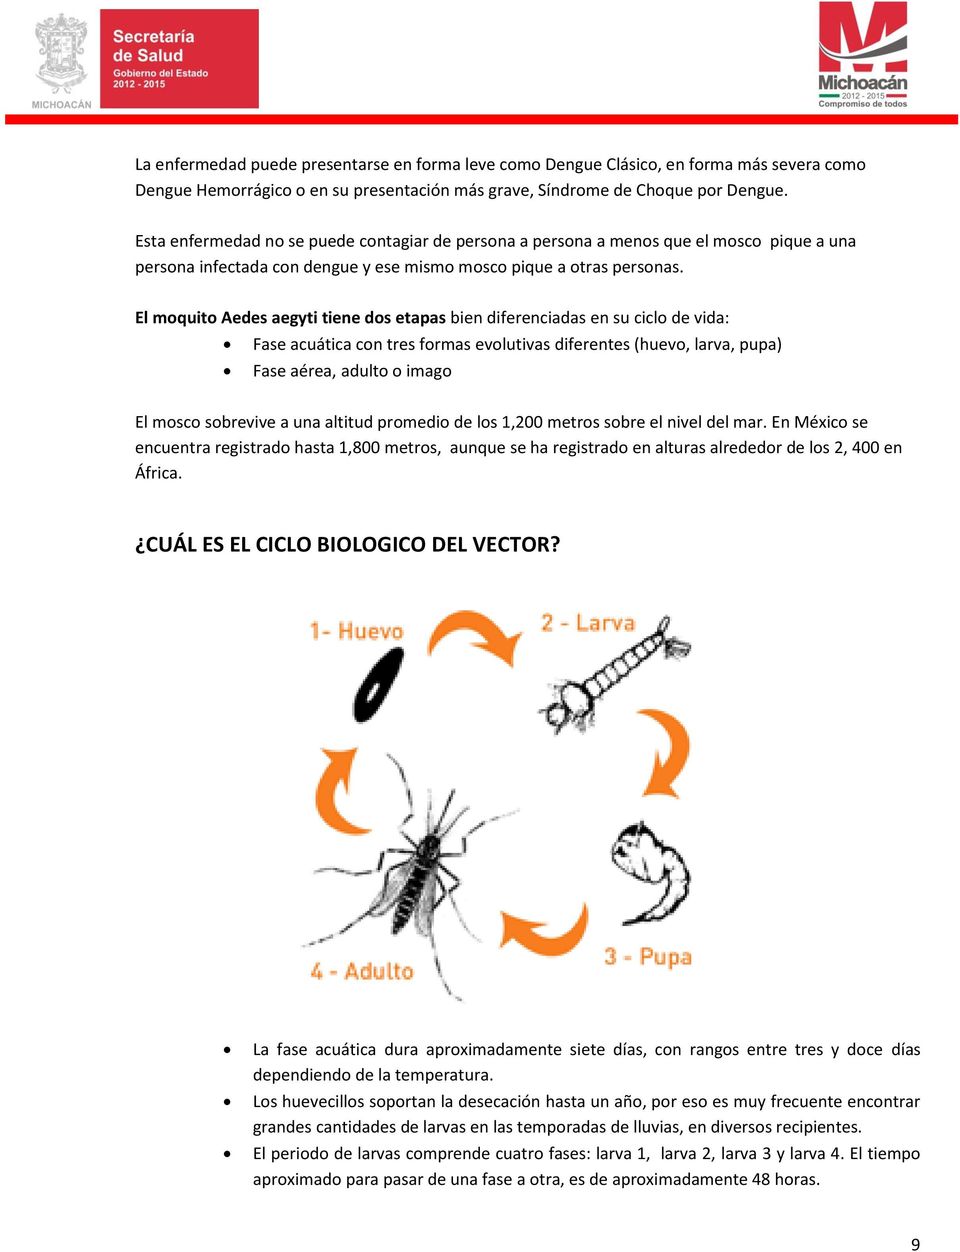 El moquito Aedes aegyti tiene dos etapas bien diferenciadas en su ciclo de vida: Fase acuática con tres formas evolutivas diferentes (huevo, larva, pupa) Fase aérea, adulto o imago El mosco sobrevive